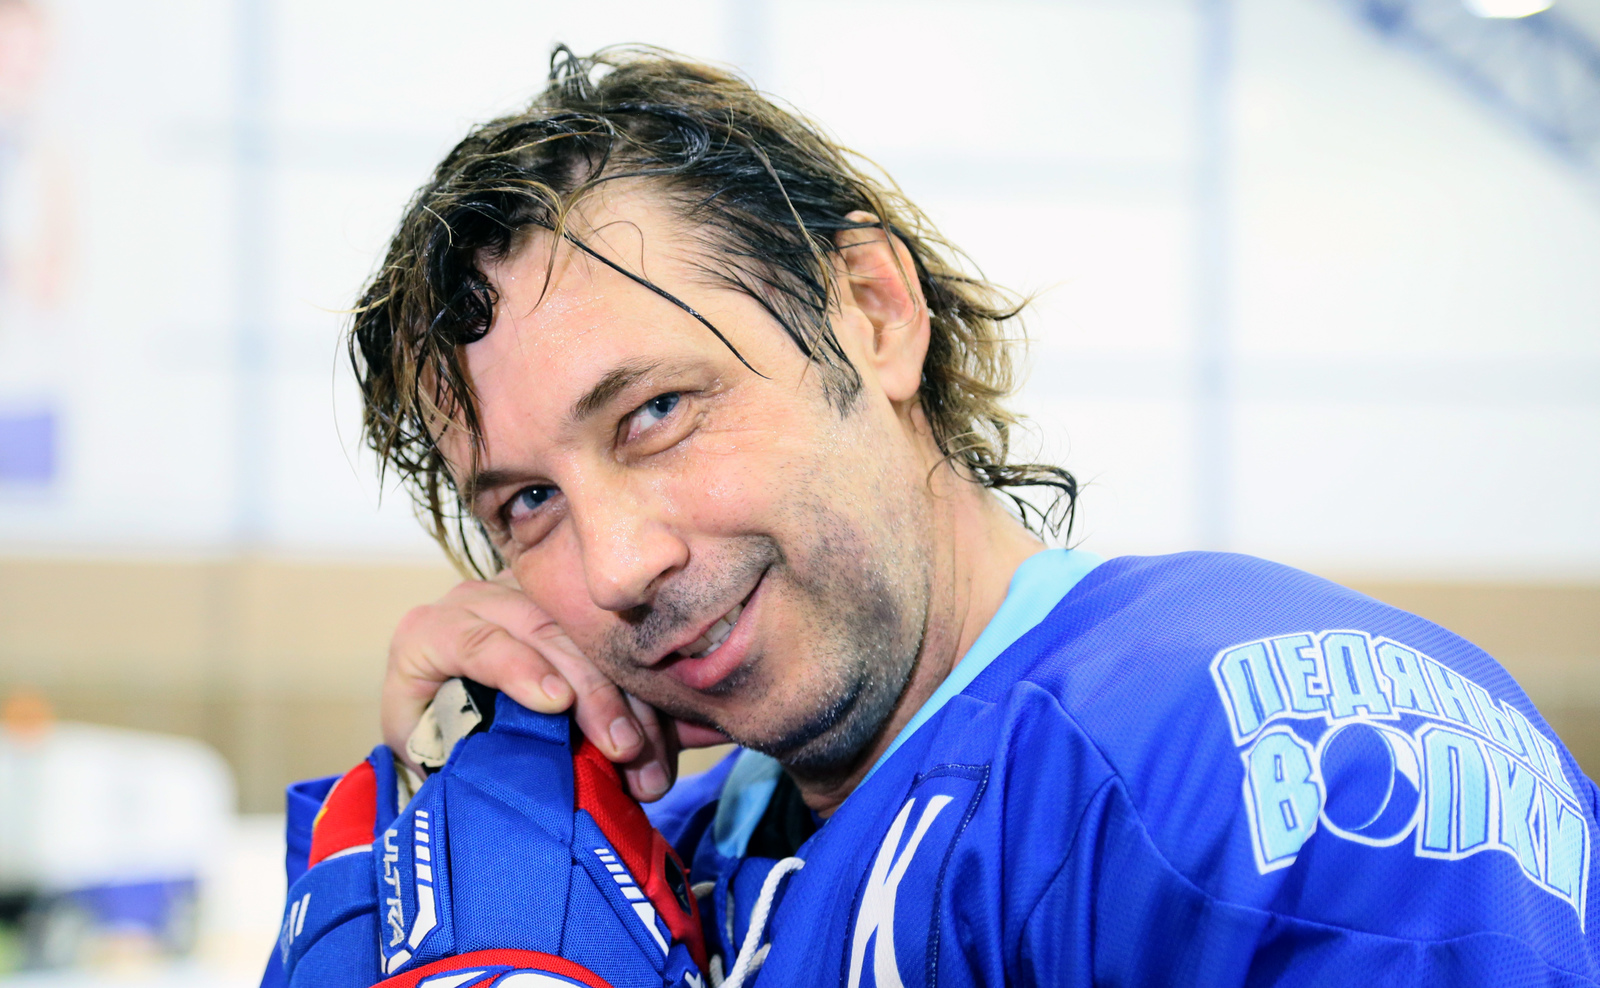 Вечерняя Москва: “Александр Мостовой: Мог стать хоккеистом”